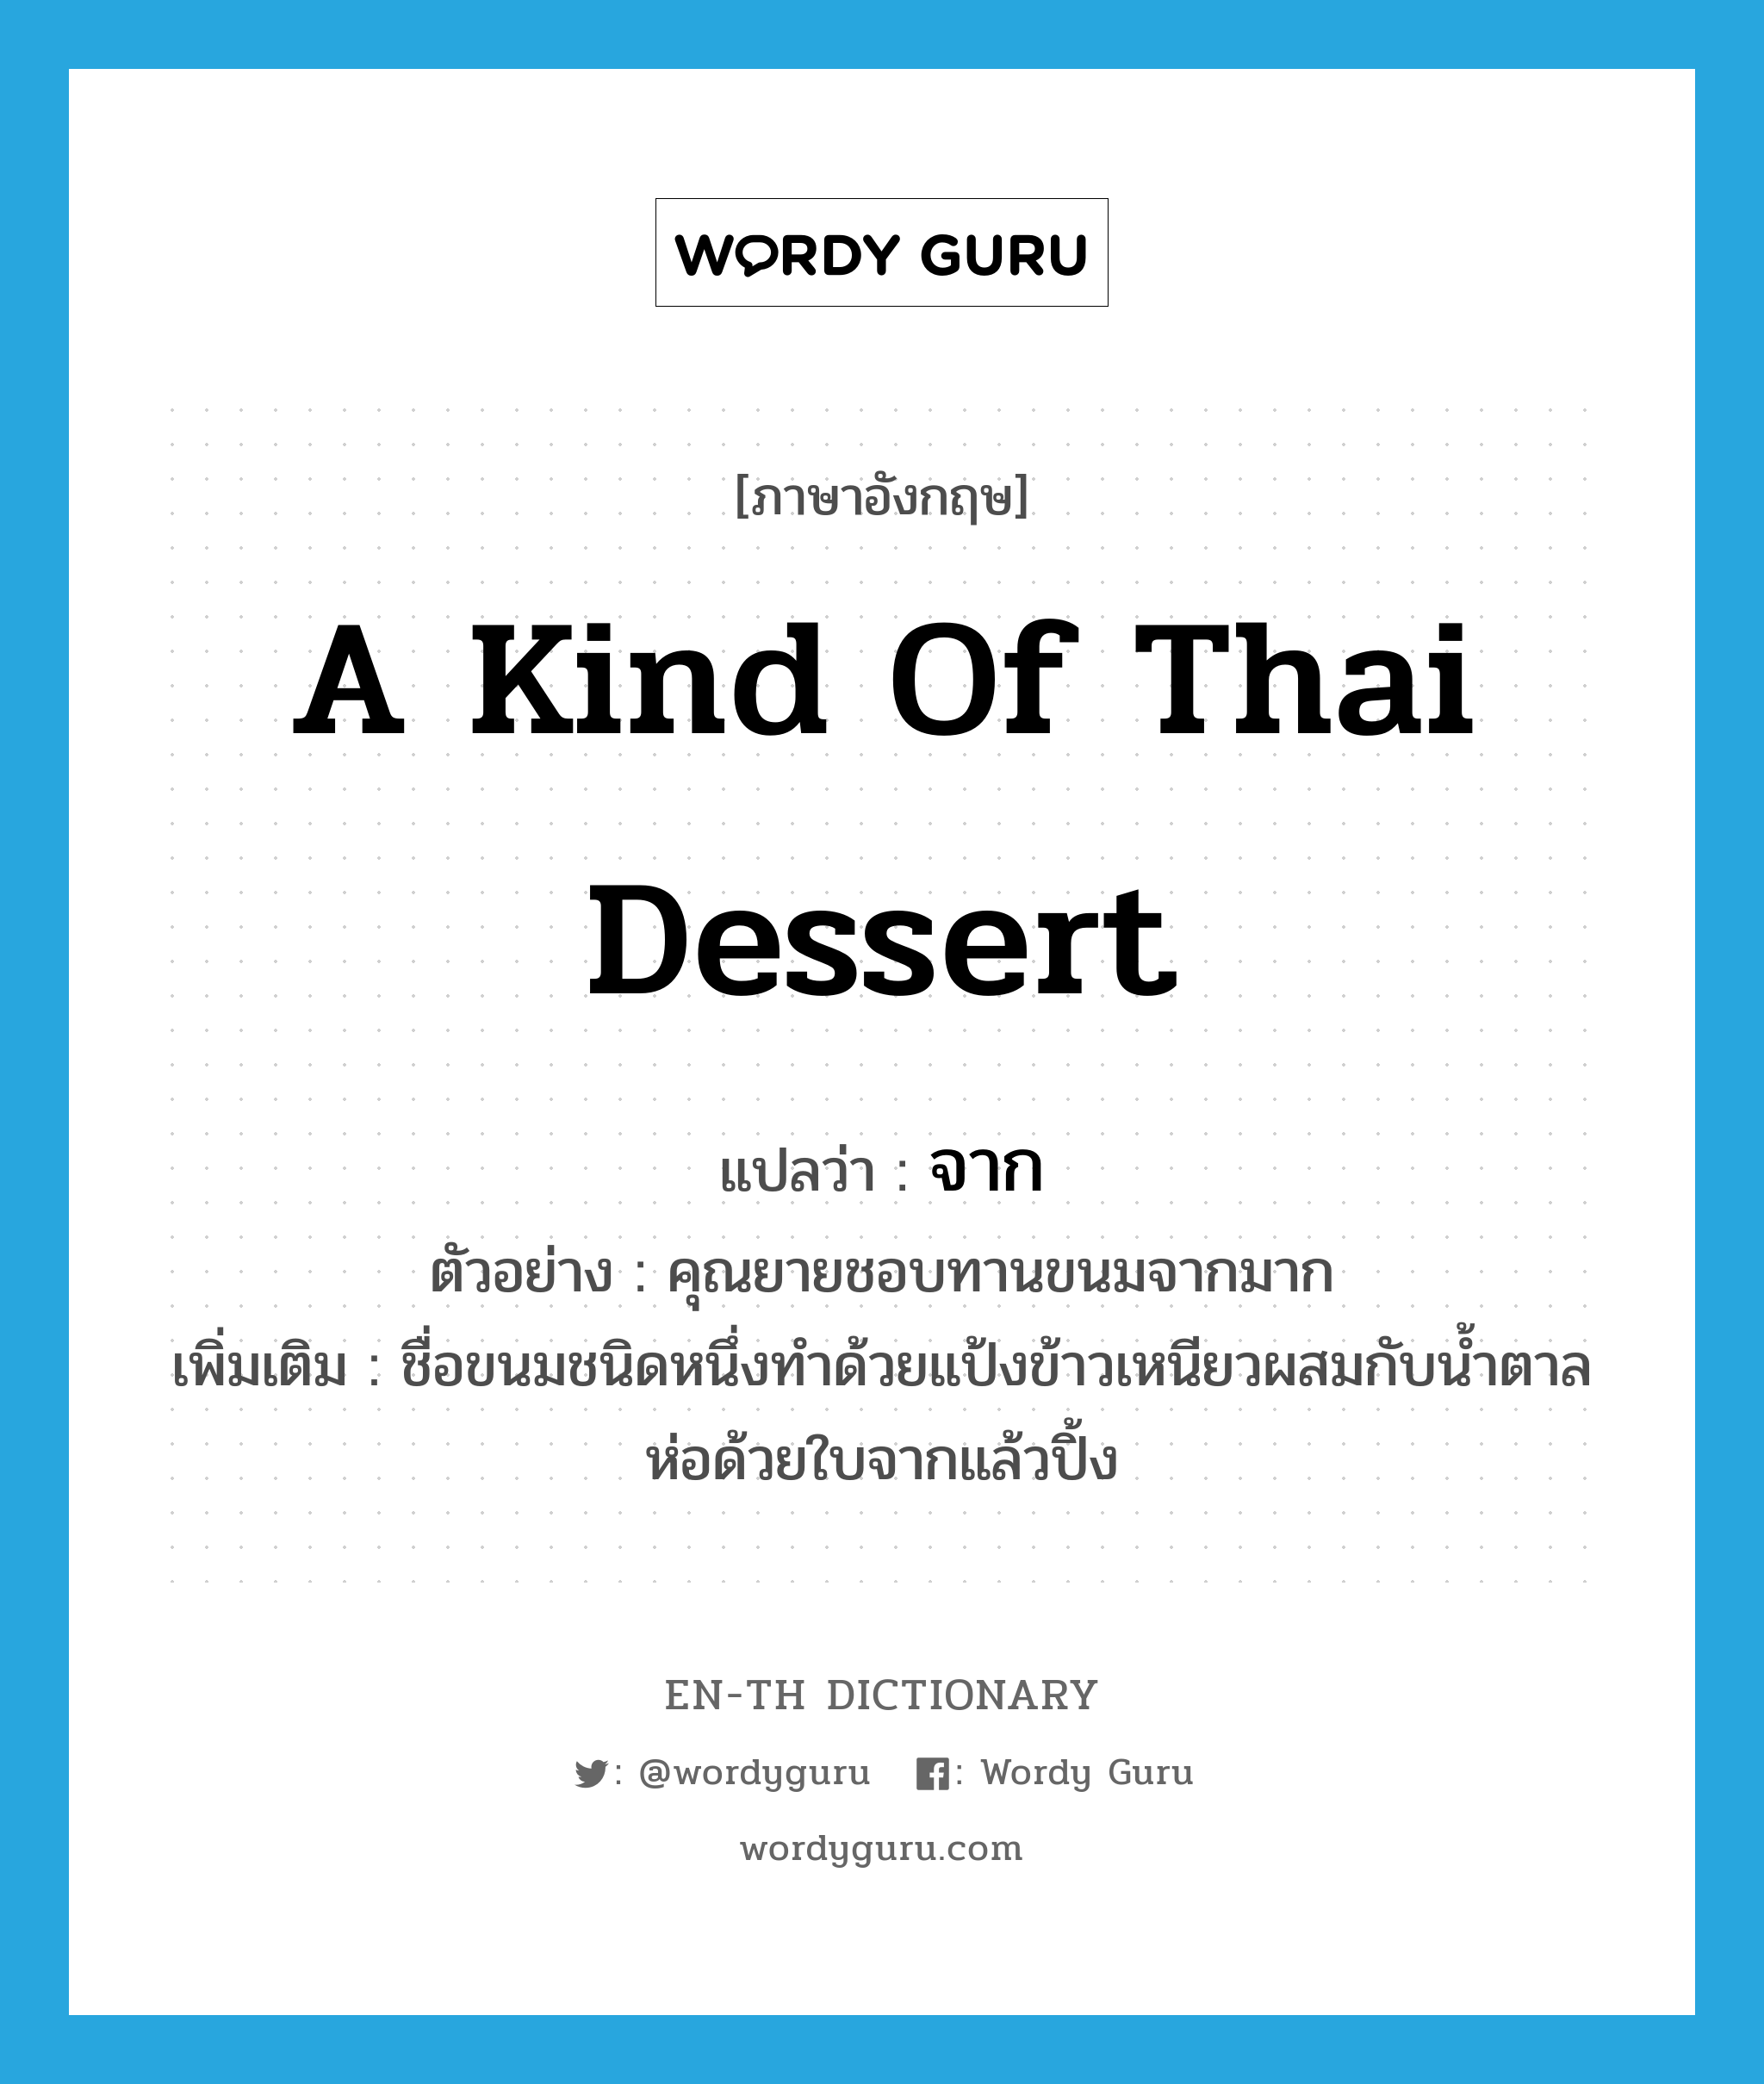 จาก ภาษาอังกฤษ?, คำศัพท์ภาษาอังกฤษ จาก แปลว่า a kind of Thai dessert ประเภท N ตัวอย่าง คุณยายชอบทานขนมจากมาก เพิ่มเติม ชื่อขนมชนิดหนึ่งทำด้วยแป้งข้าวเหนียวผสมกับน้ำตาล ห่อด้วยใบจากแล้วปิ้ง หมวด N